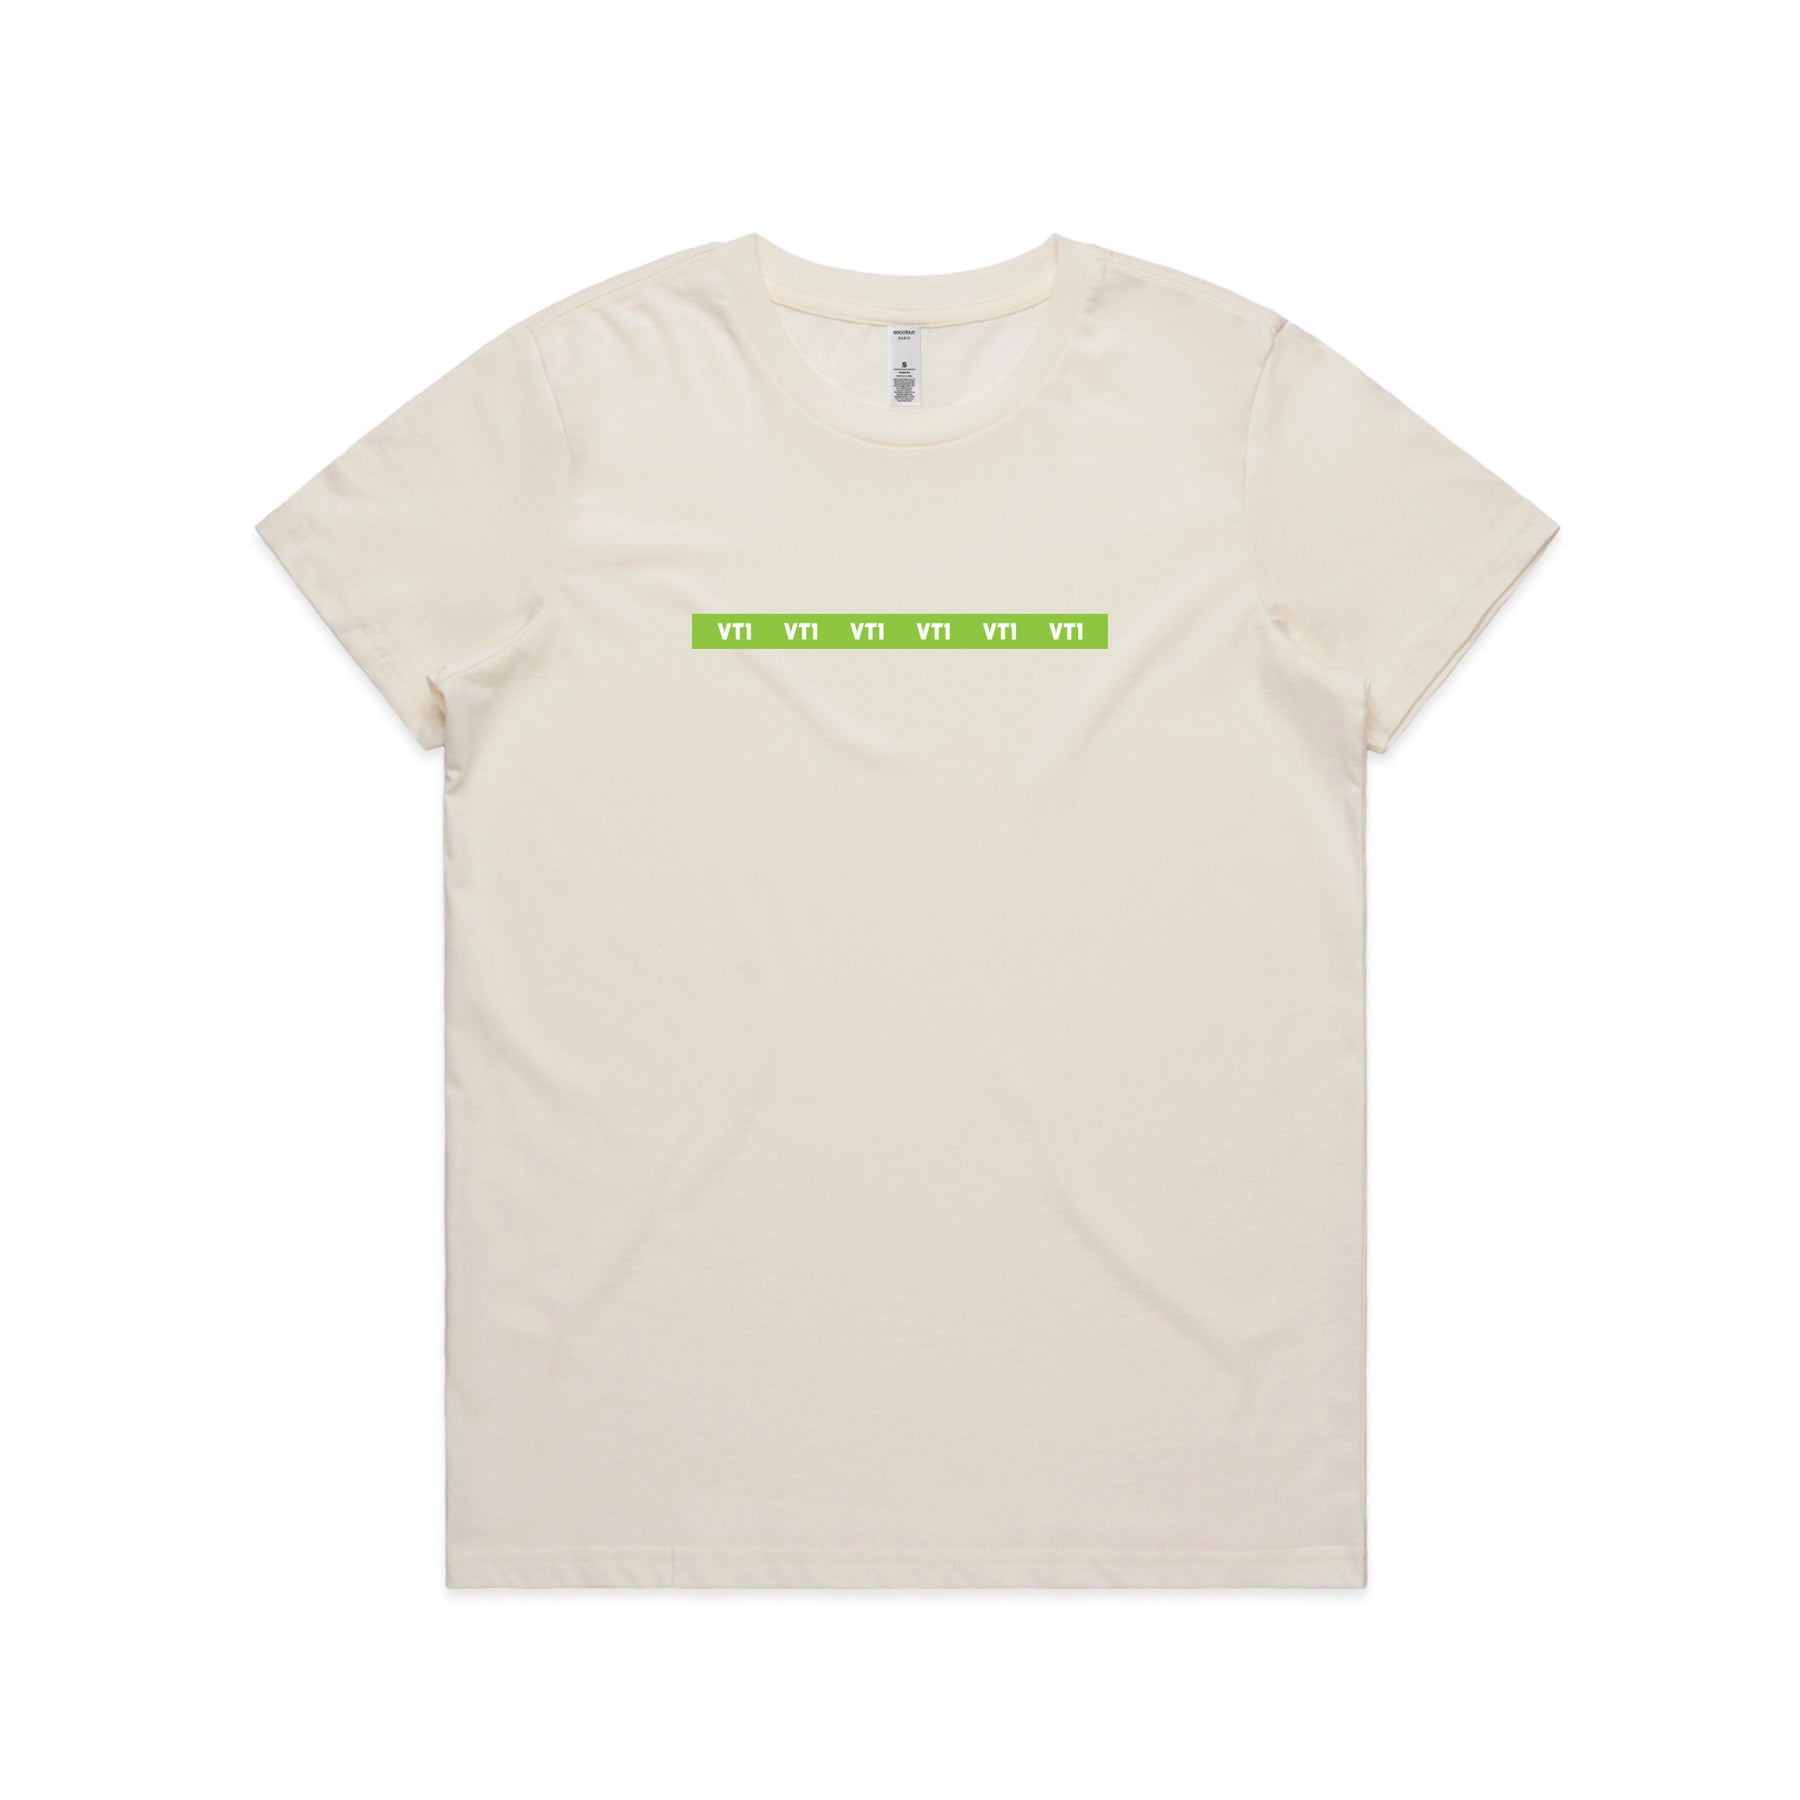 VT1 Green Bar T-Shirt - Adults